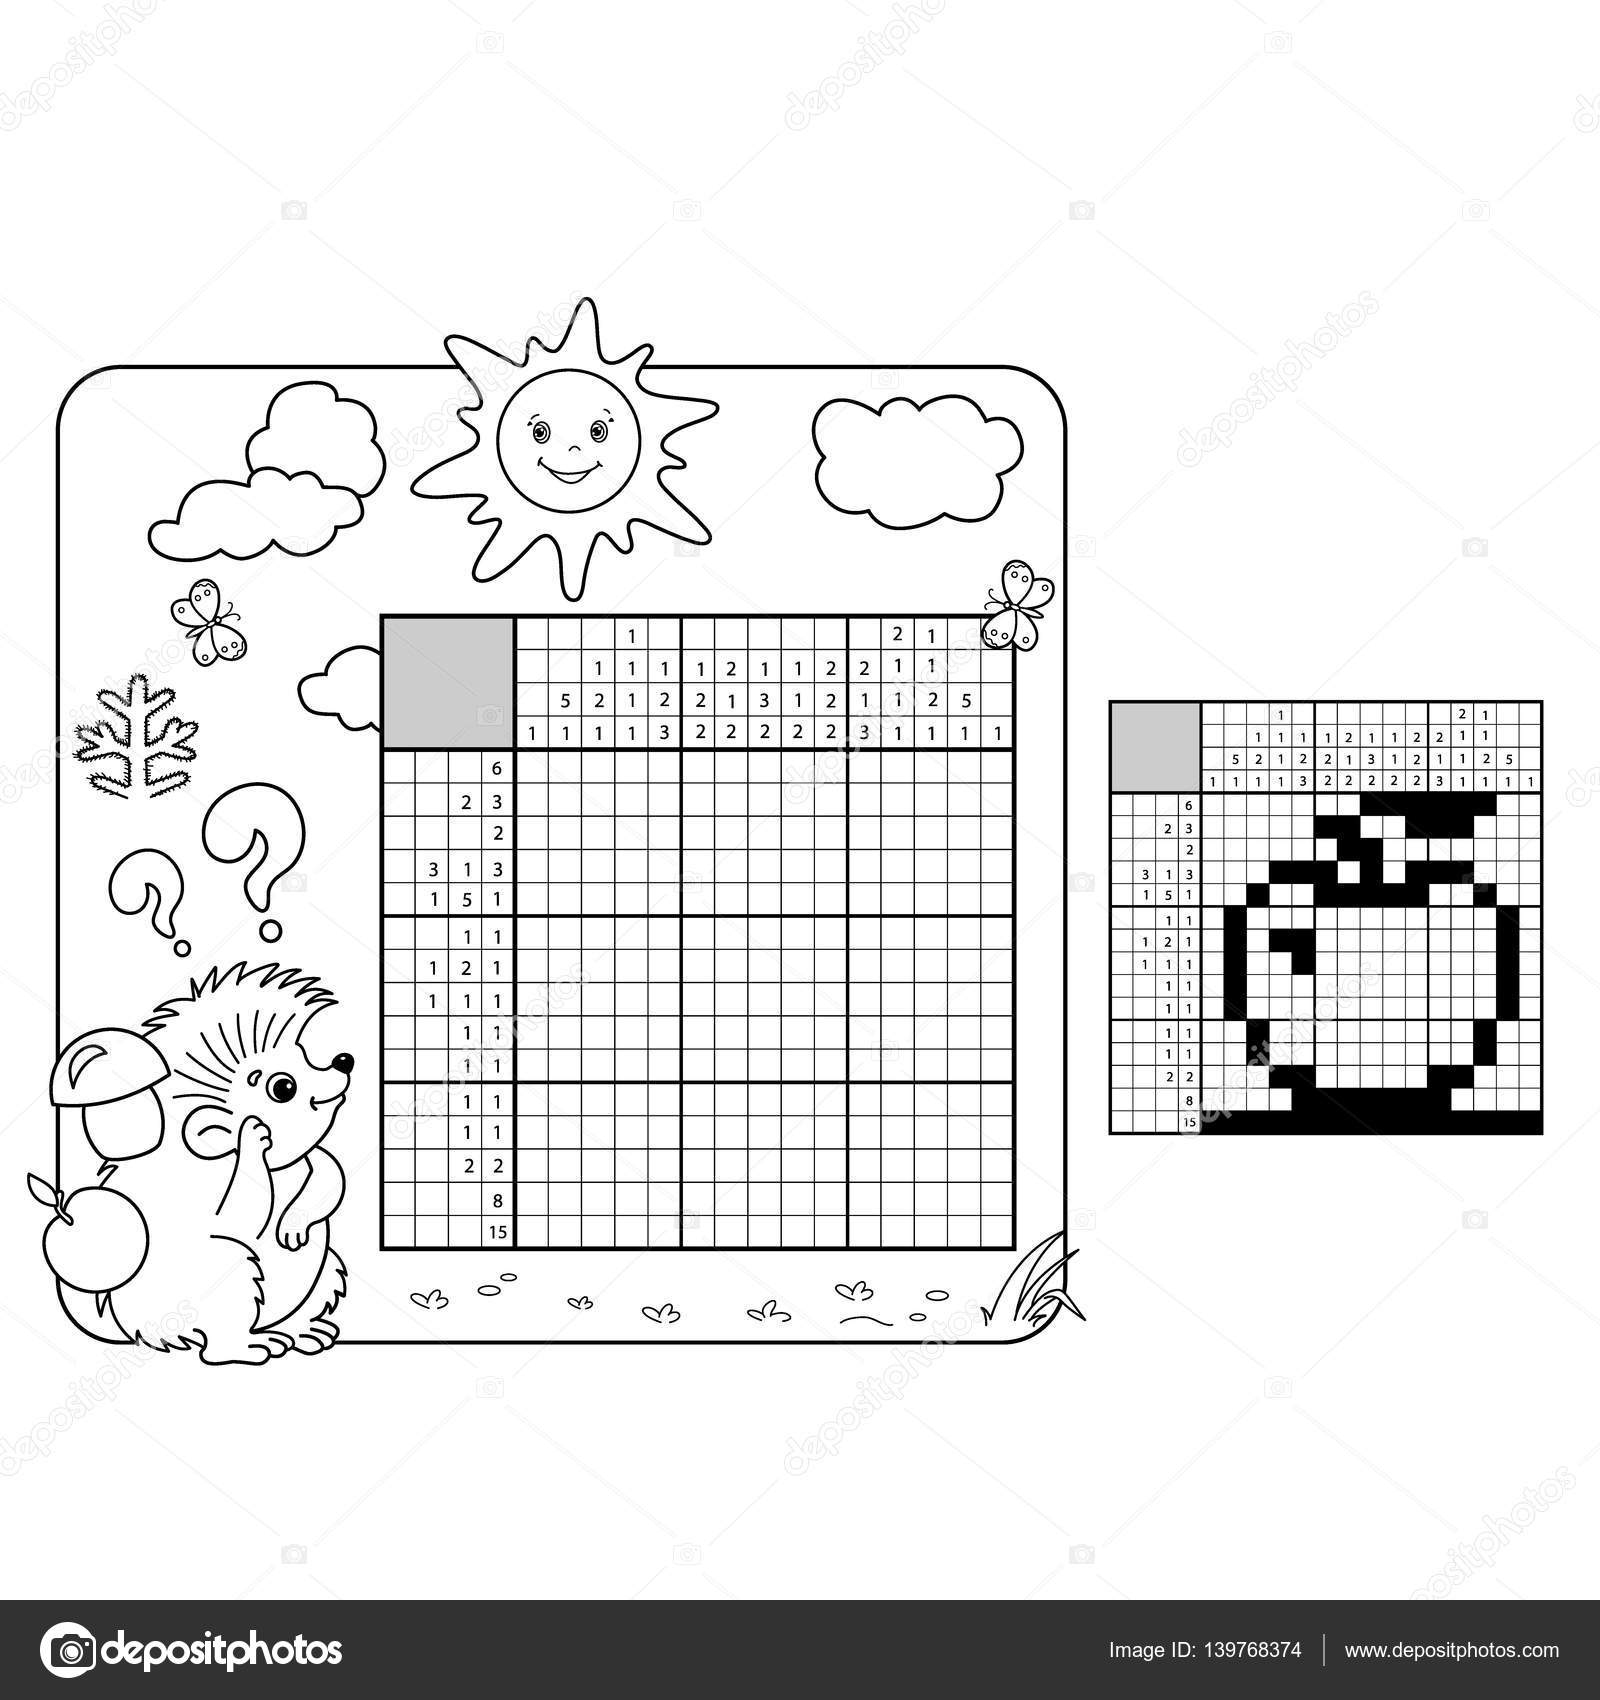 Bianco e nero giapponese cruciverba con risposta Nonogram con risposta Parole incrociate di grafico Da colorare pagina muta di istrice